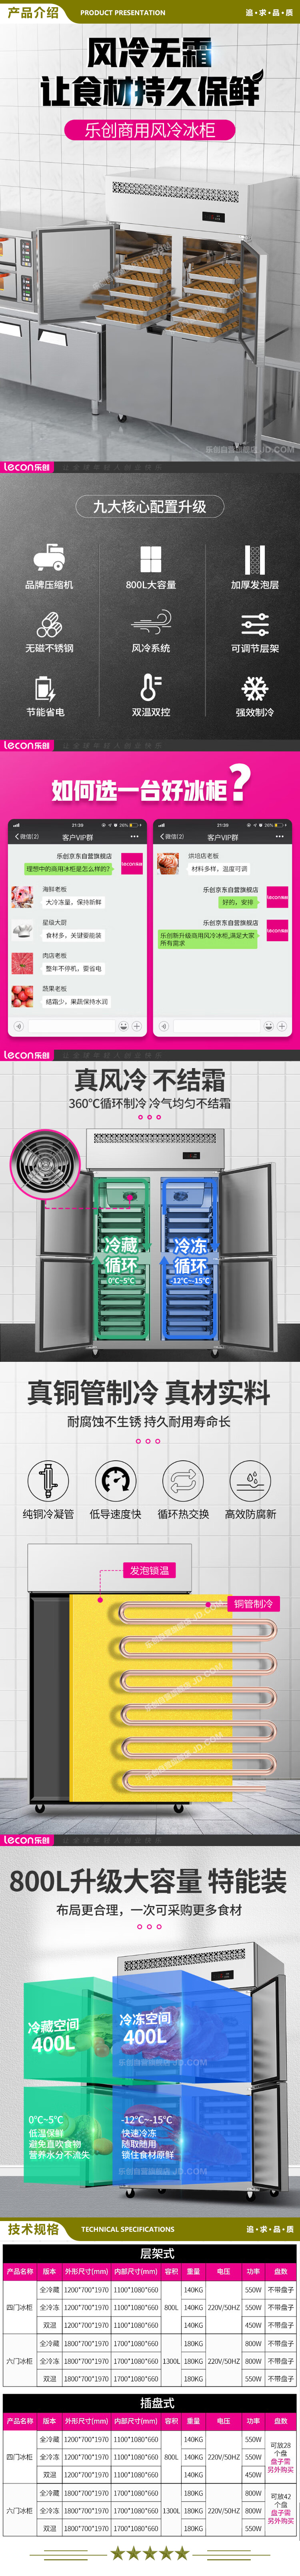 乐创(lecon) LC-LMBG01 双温商用六门冰柜厨房冰箱双温冷藏冷冻餐饮立式后厨保鲜柜冷柜风冷插盘式  2.jpg